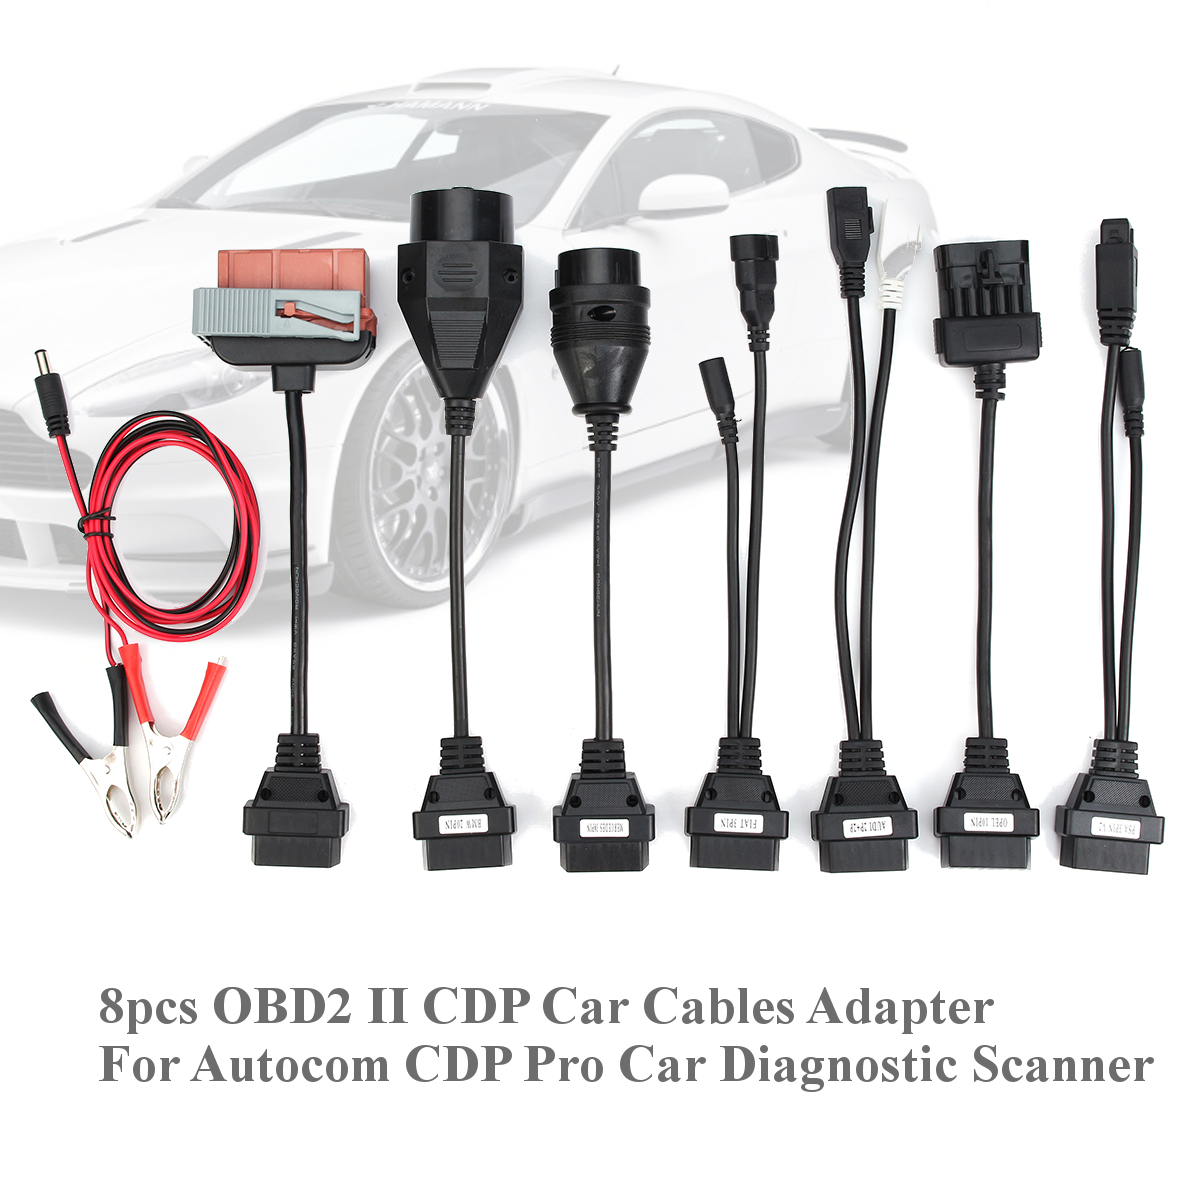 8PCS-OBD2-II-CDP-Car-Cables-Adapter-for-Autocom-CDP-Pro-Car-Diagnostic-Scanner-1213492